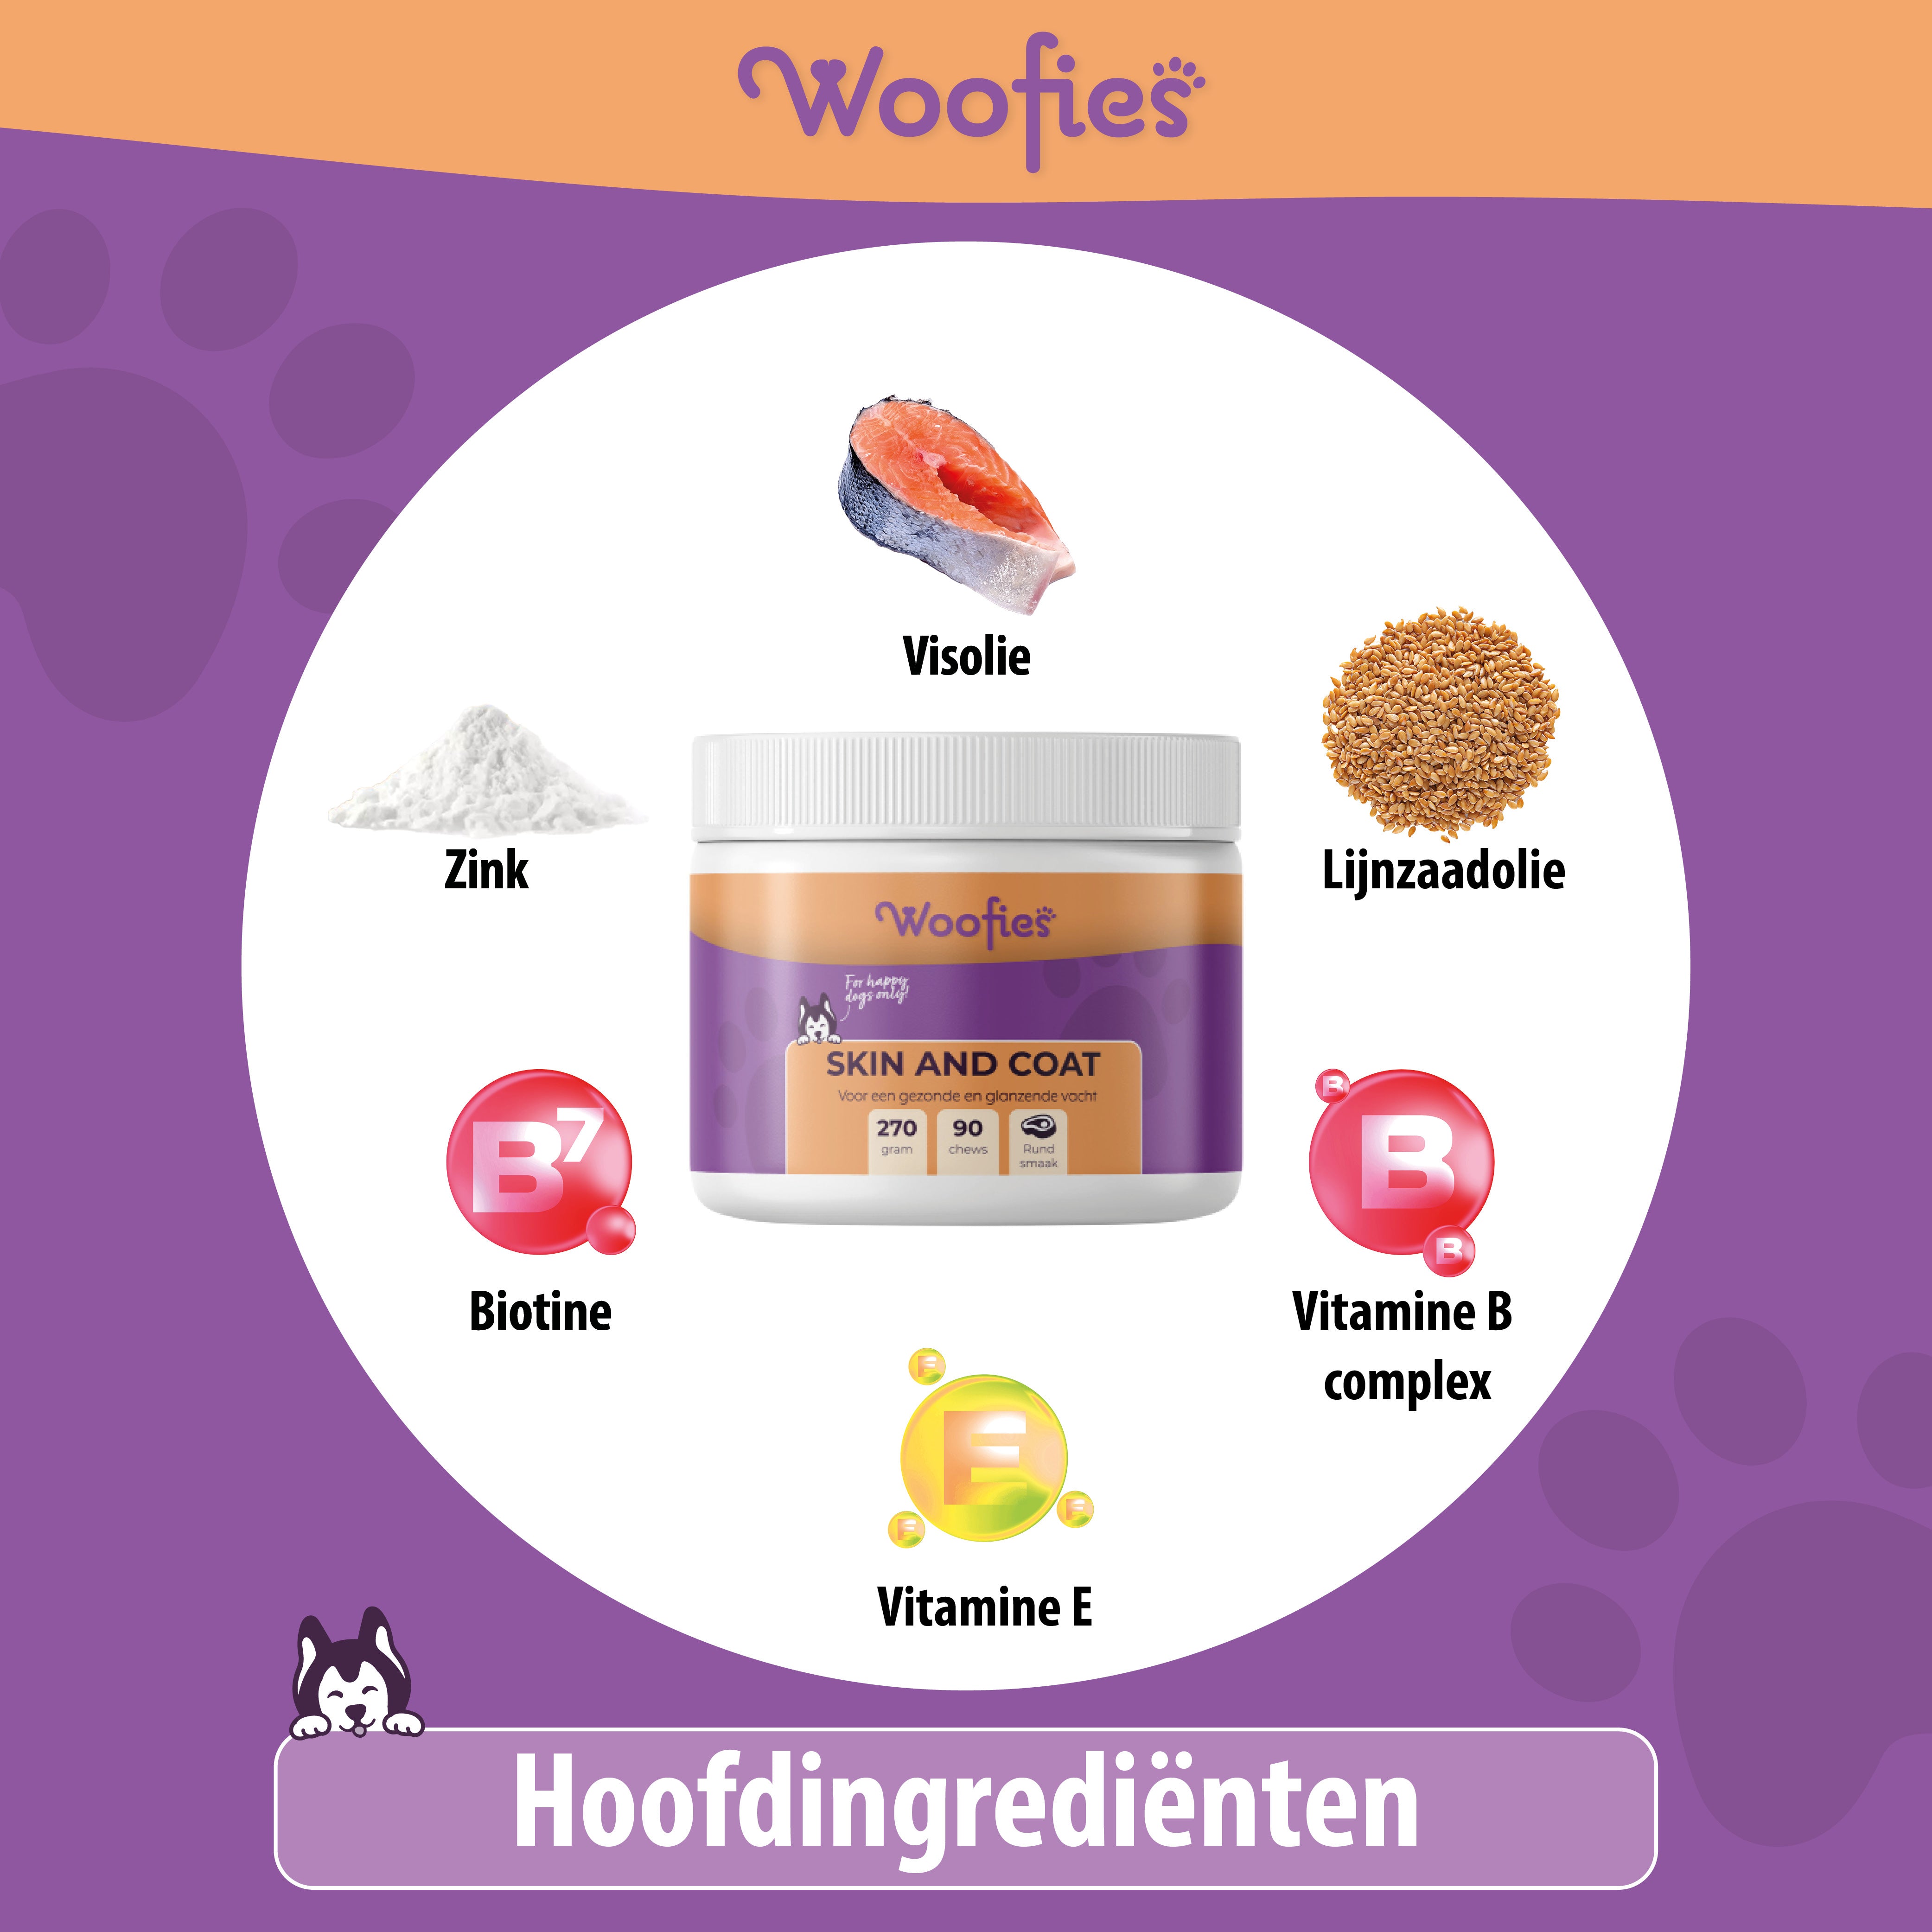 "Detail van natuurlijke ingrediënten in Woofies Skin & Coat formule."